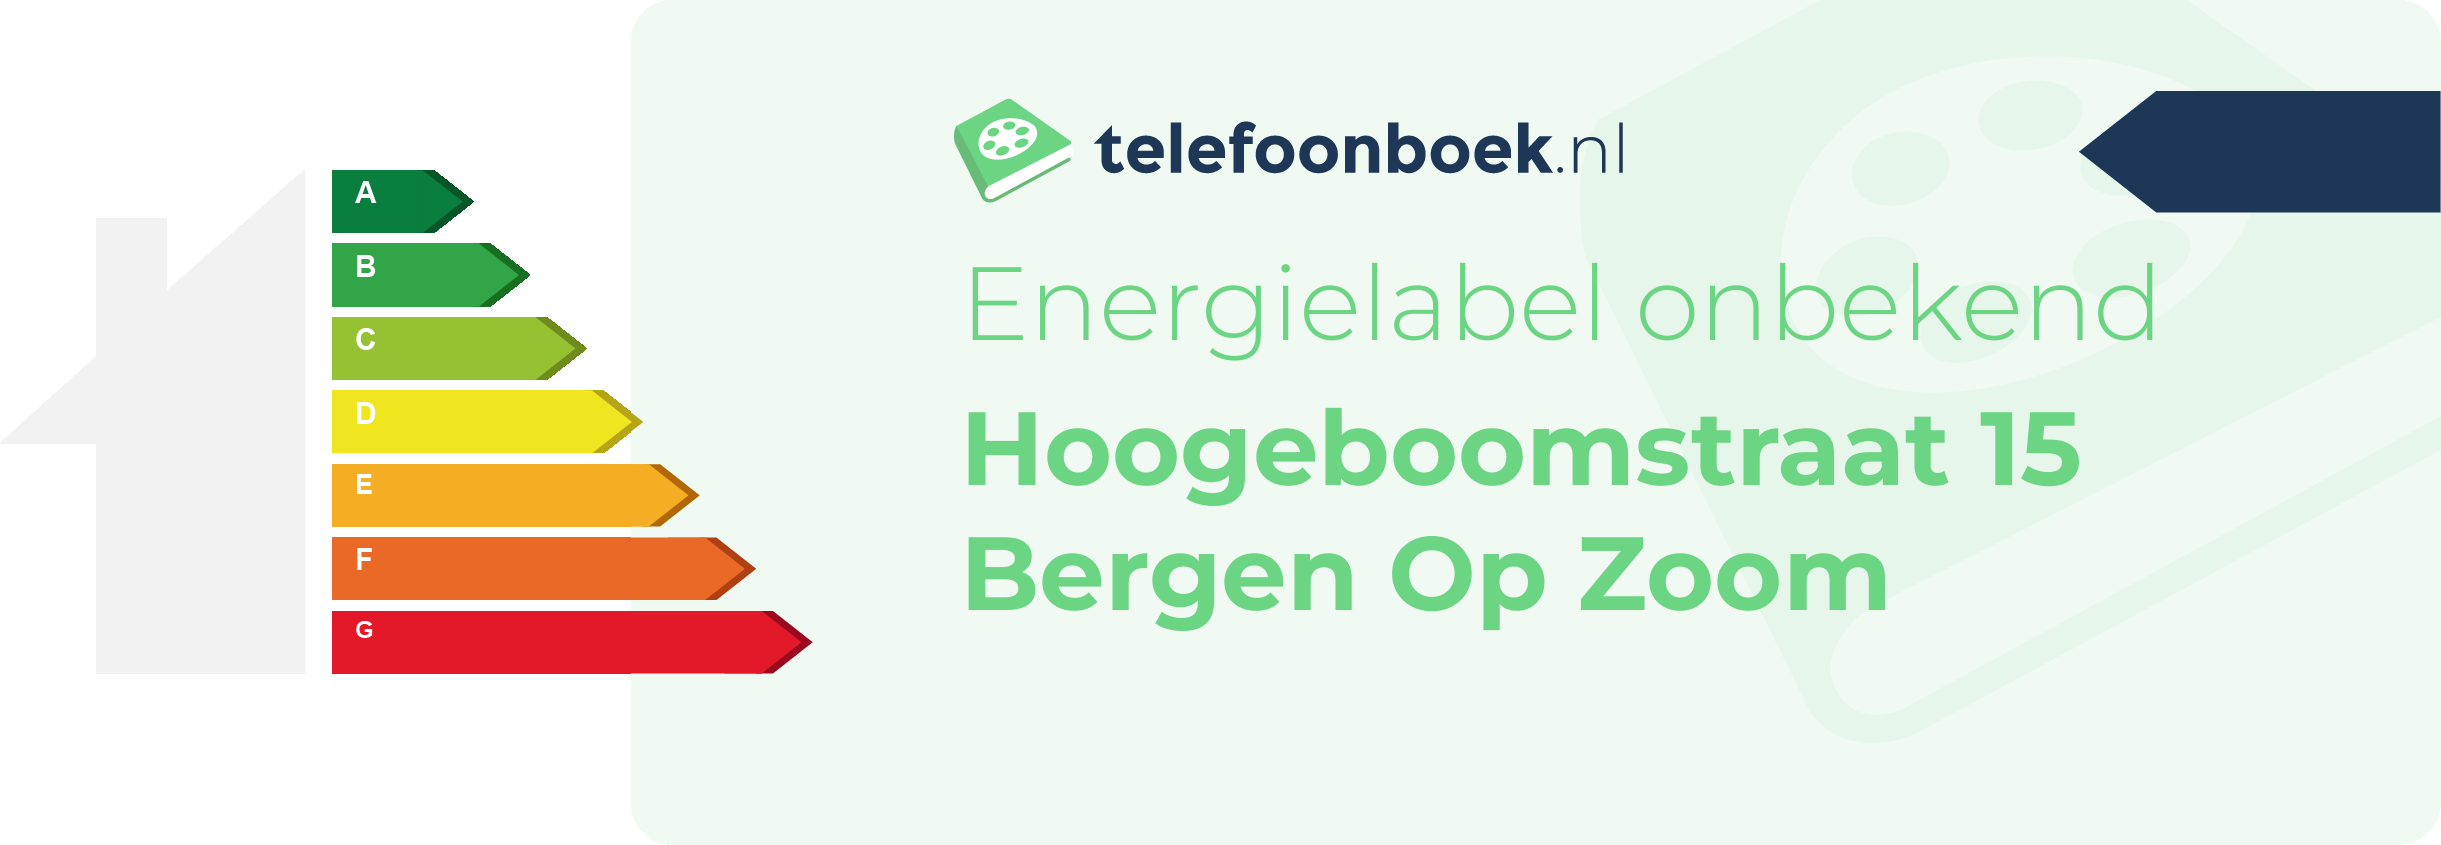 Energielabel Hoogeboomstraat 15 Bergen Op Zoom